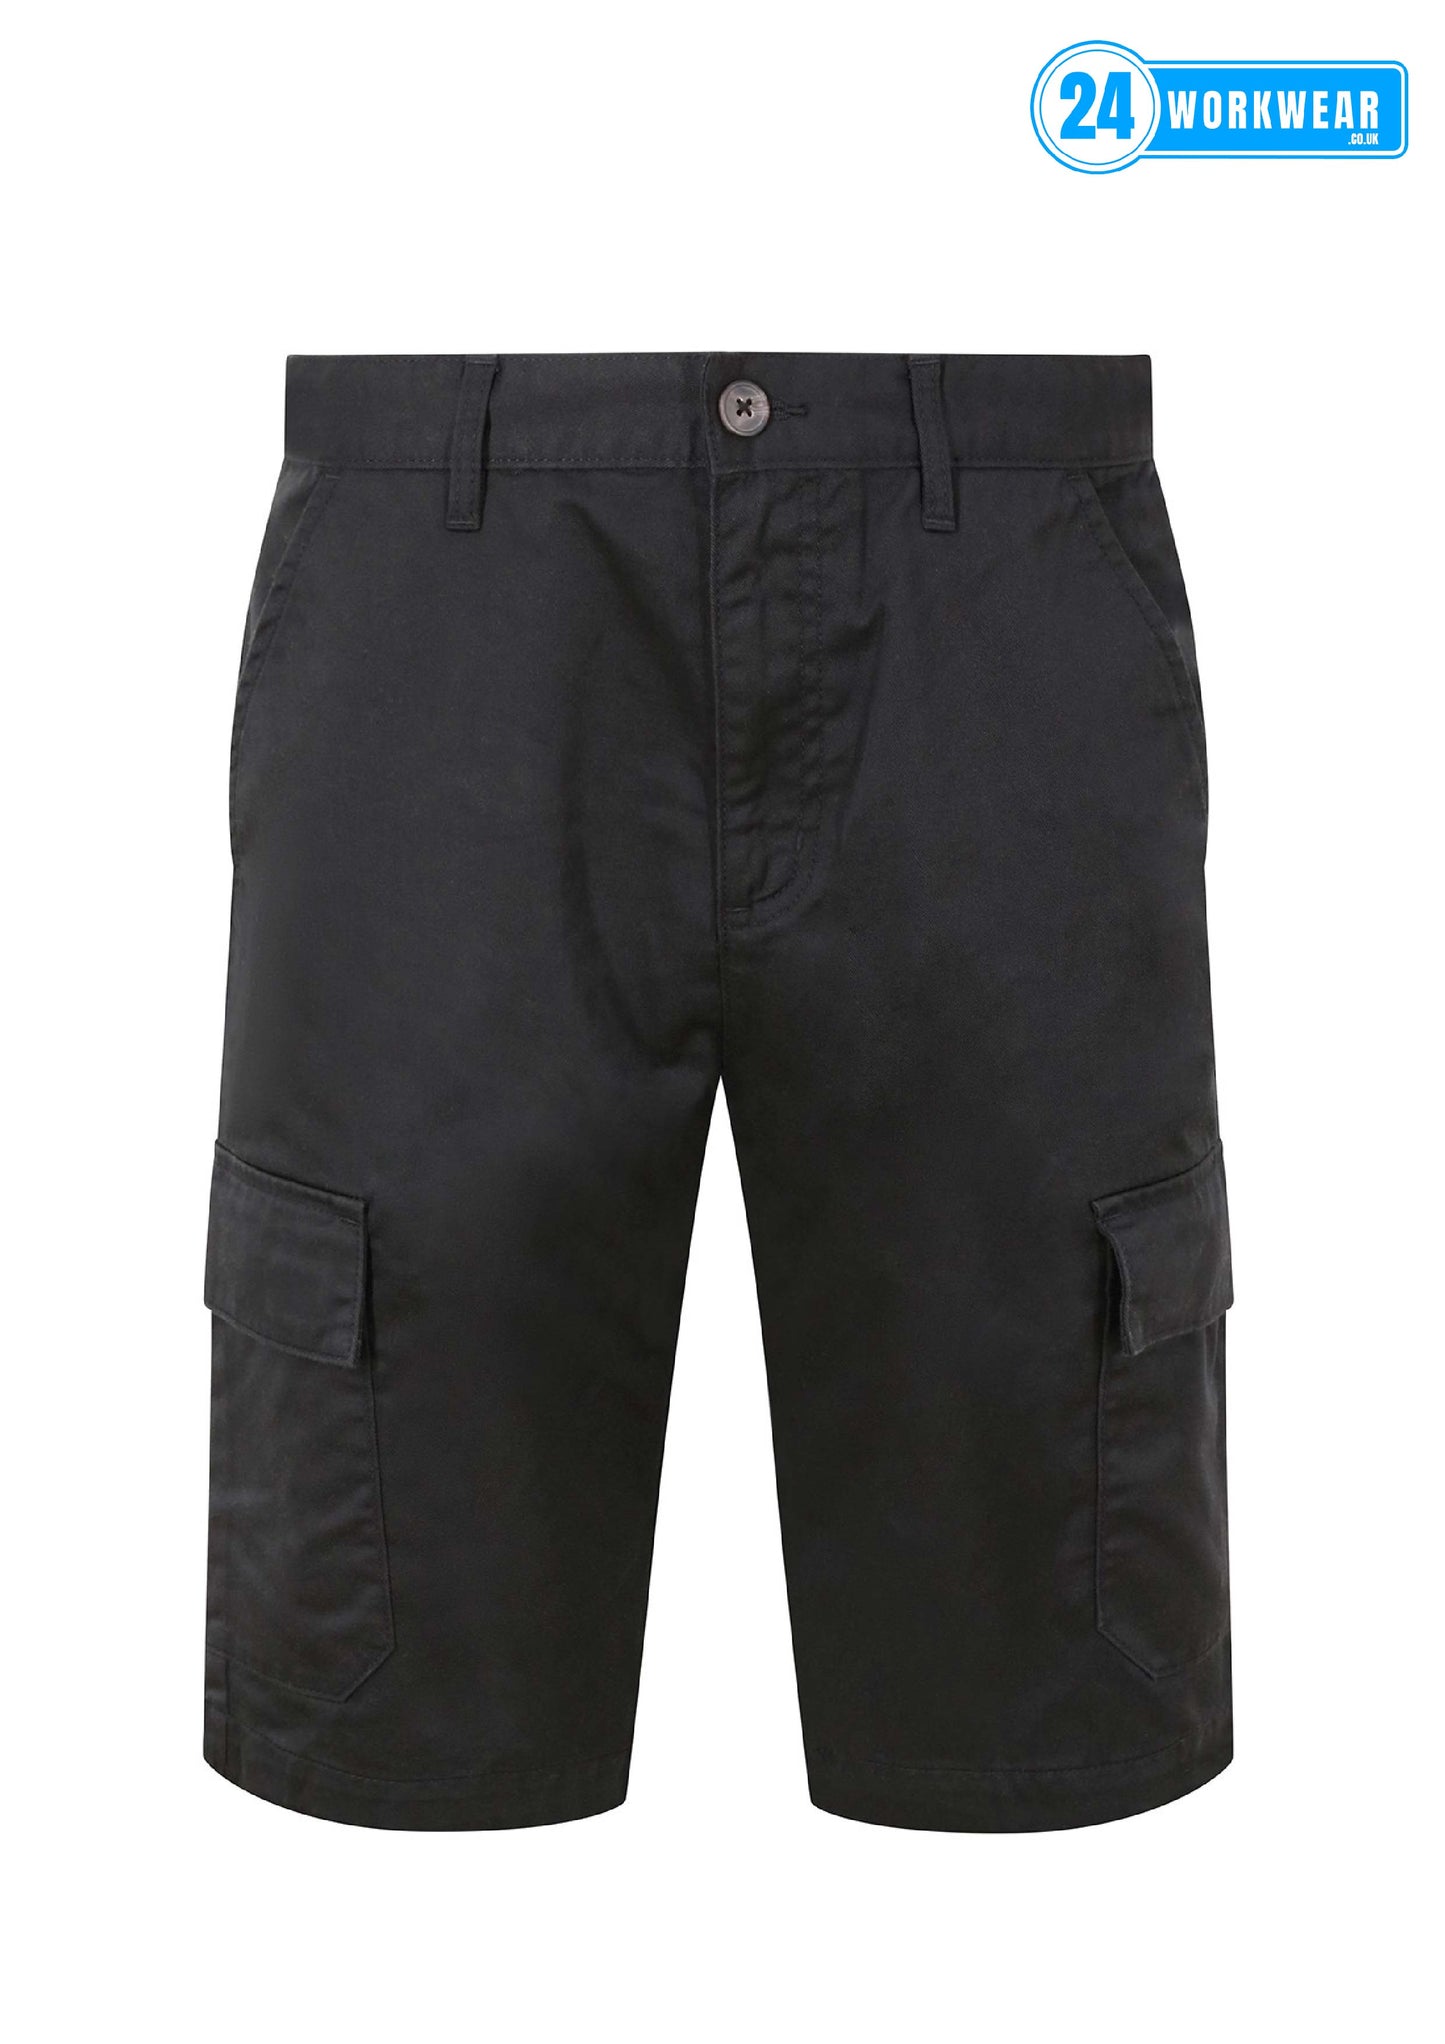 Pro RTX Cargo Shorts - 24 Workwear - Shorts